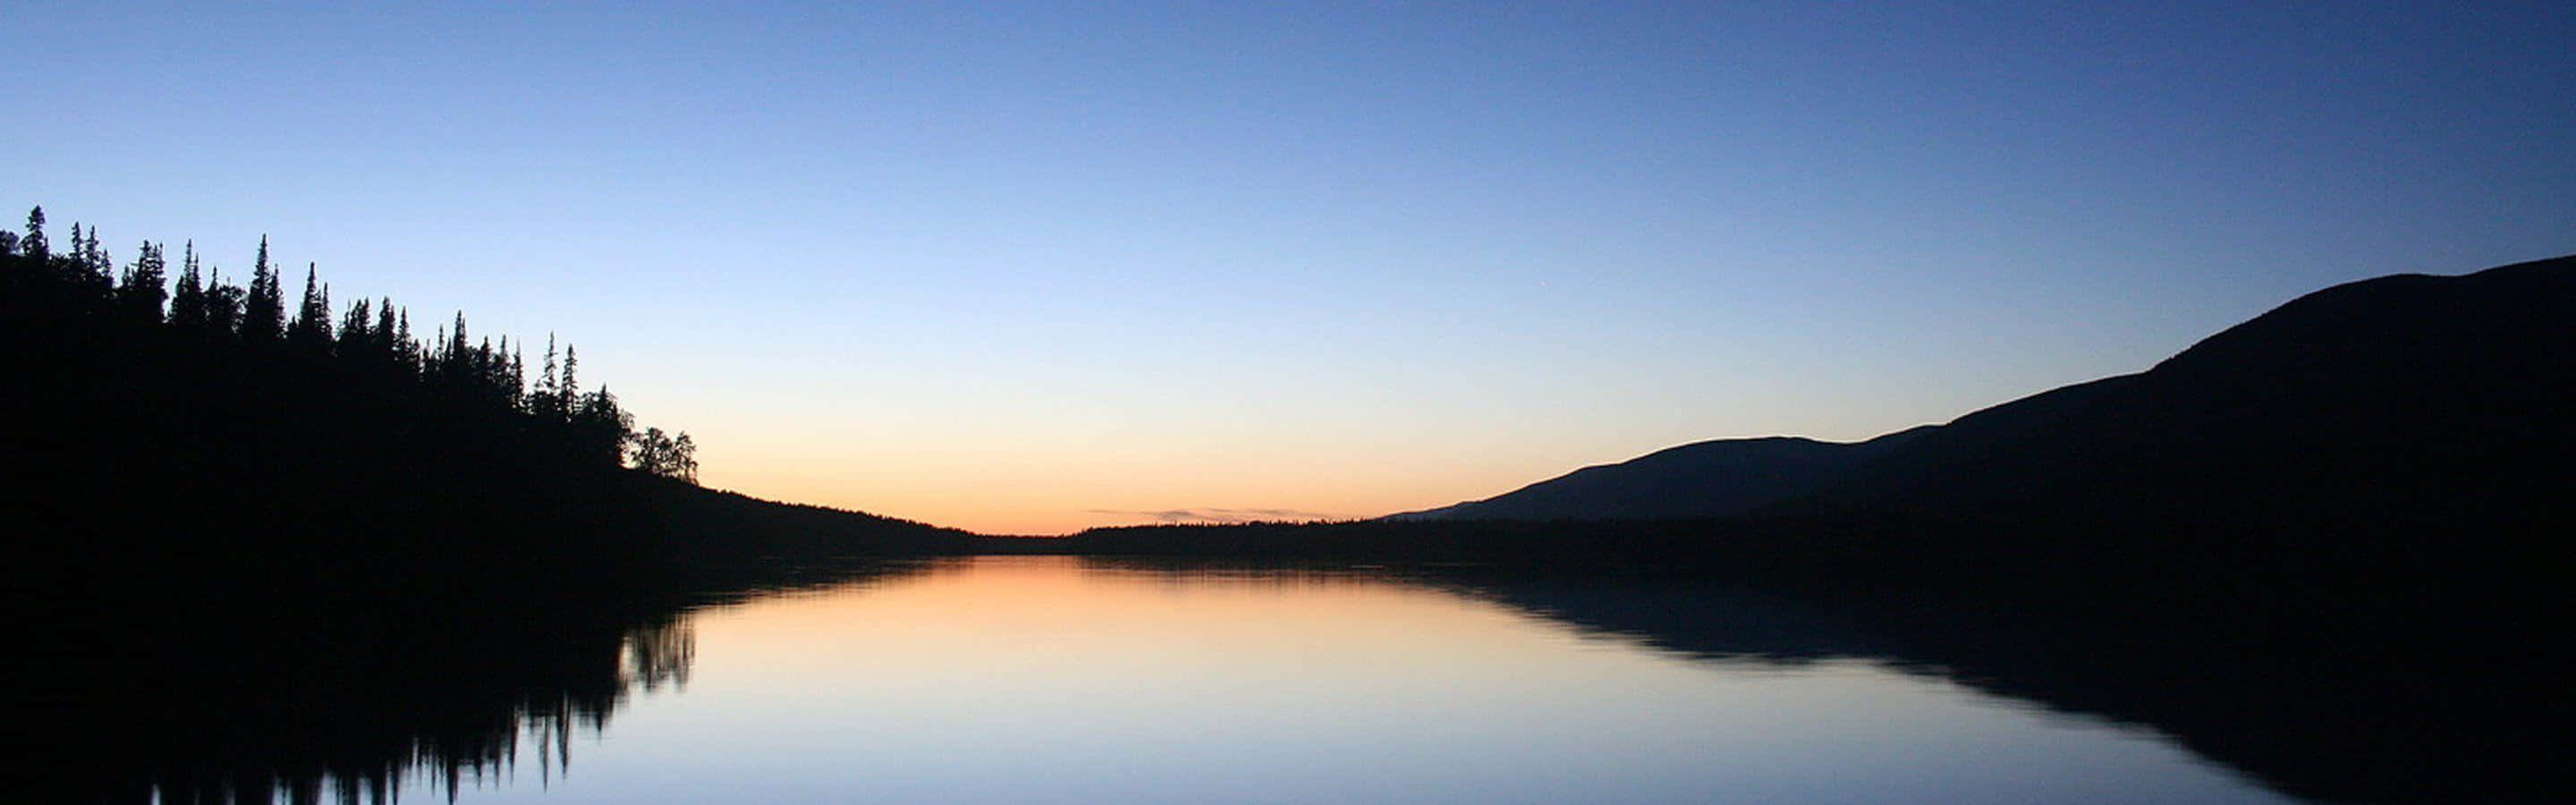 Multi Monitor Calm Lake During Sunset Wallpaper